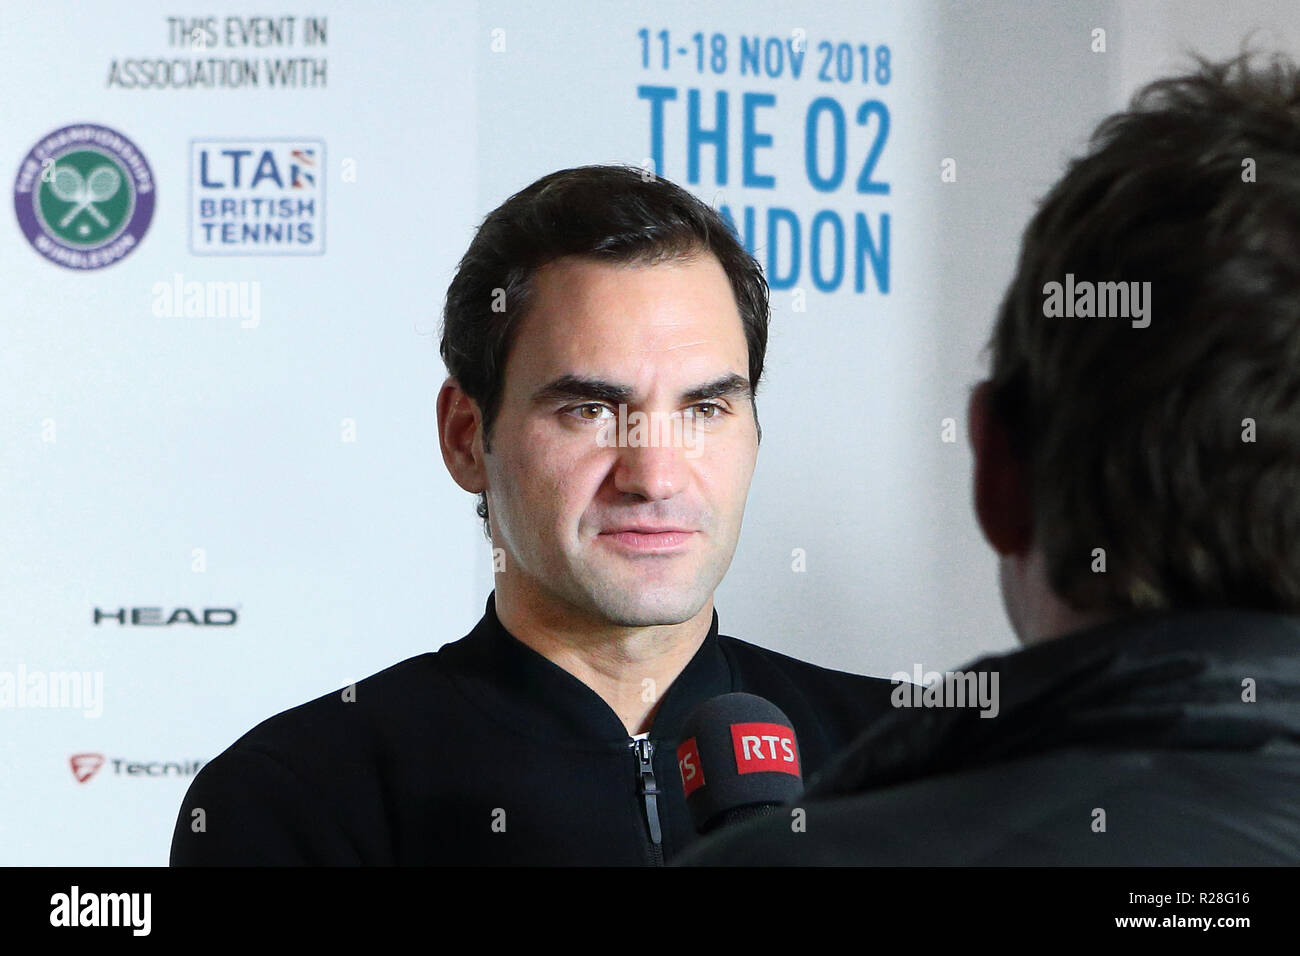 Londres, ANGLETERRE - 17 novembre : Roger Federer La Suisse de donner des entrevues aux médias après sa défaite contre Alexander Zverev de l'Allemagne au cours de l'ATP World Tour finale au O2 Arena le 17 novembre 2018 à Londres, en Angleterre. Photo par Paul Cunningham Crédit : Paul Cunningham/Alamy Live News Banque D'Images